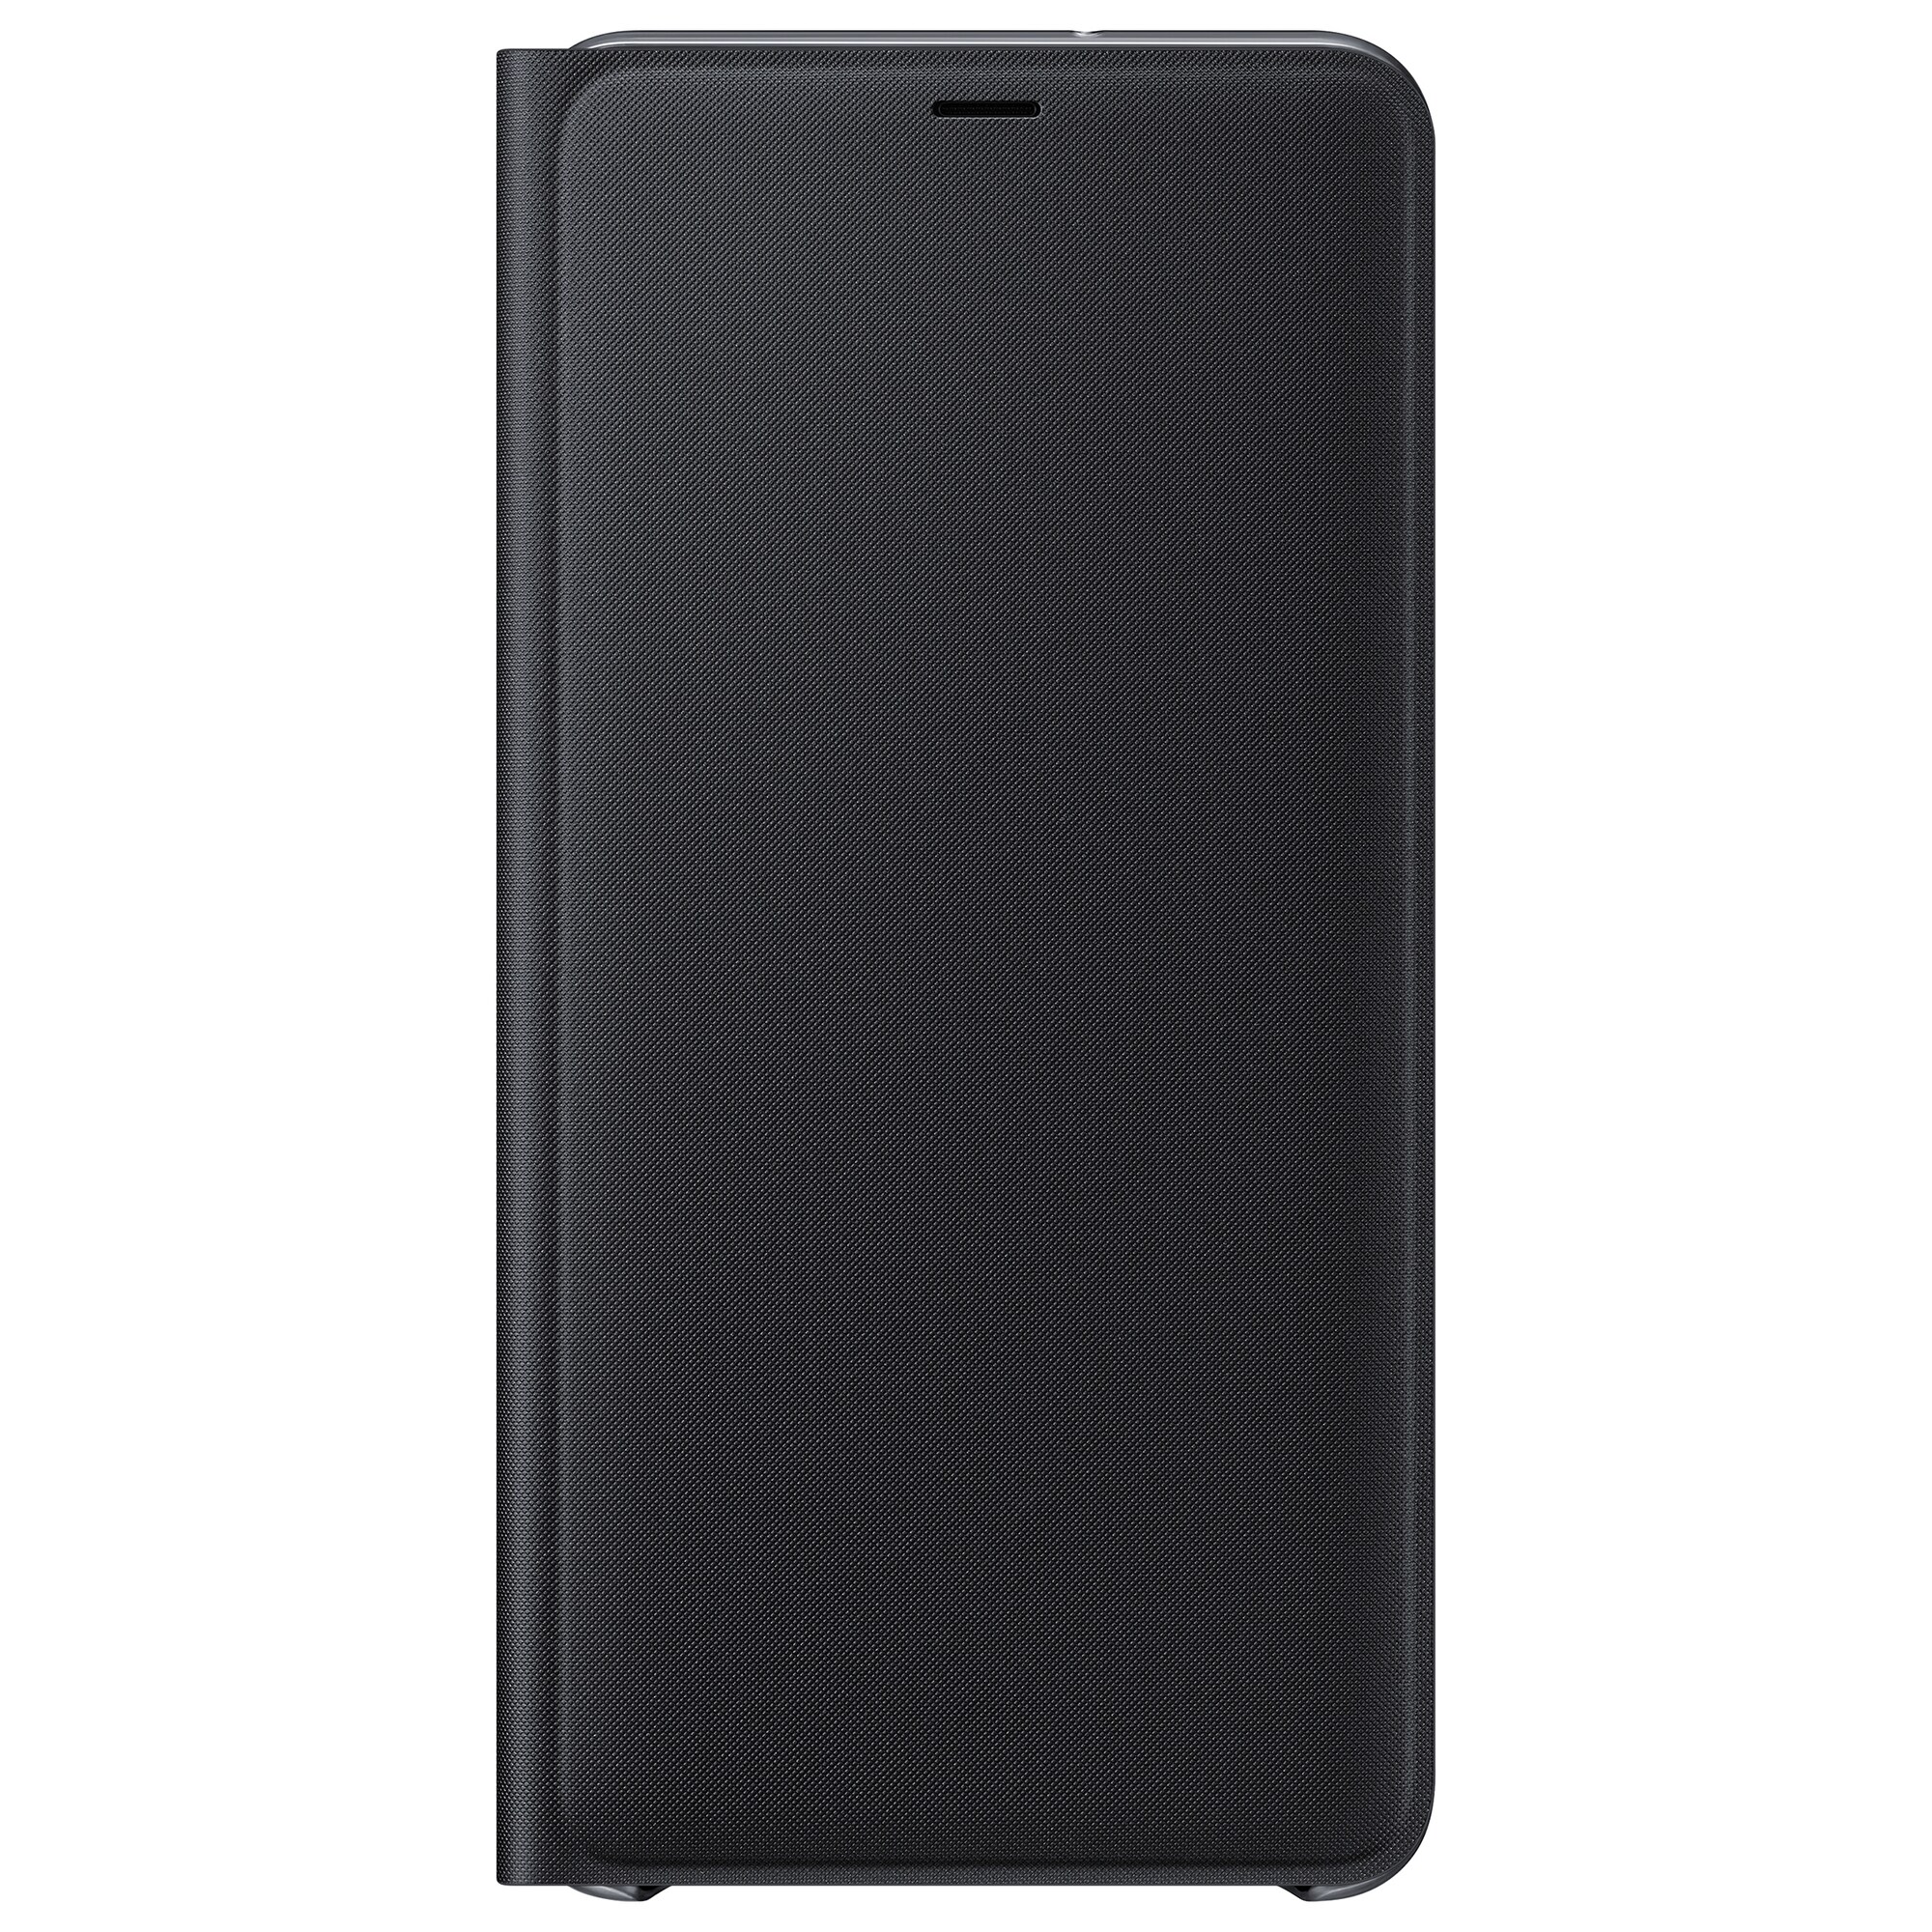 Samsung Galaxy A7 lommebokdeksel (sort) - Deksler og etui til mobiltelefon  - Elkjøp